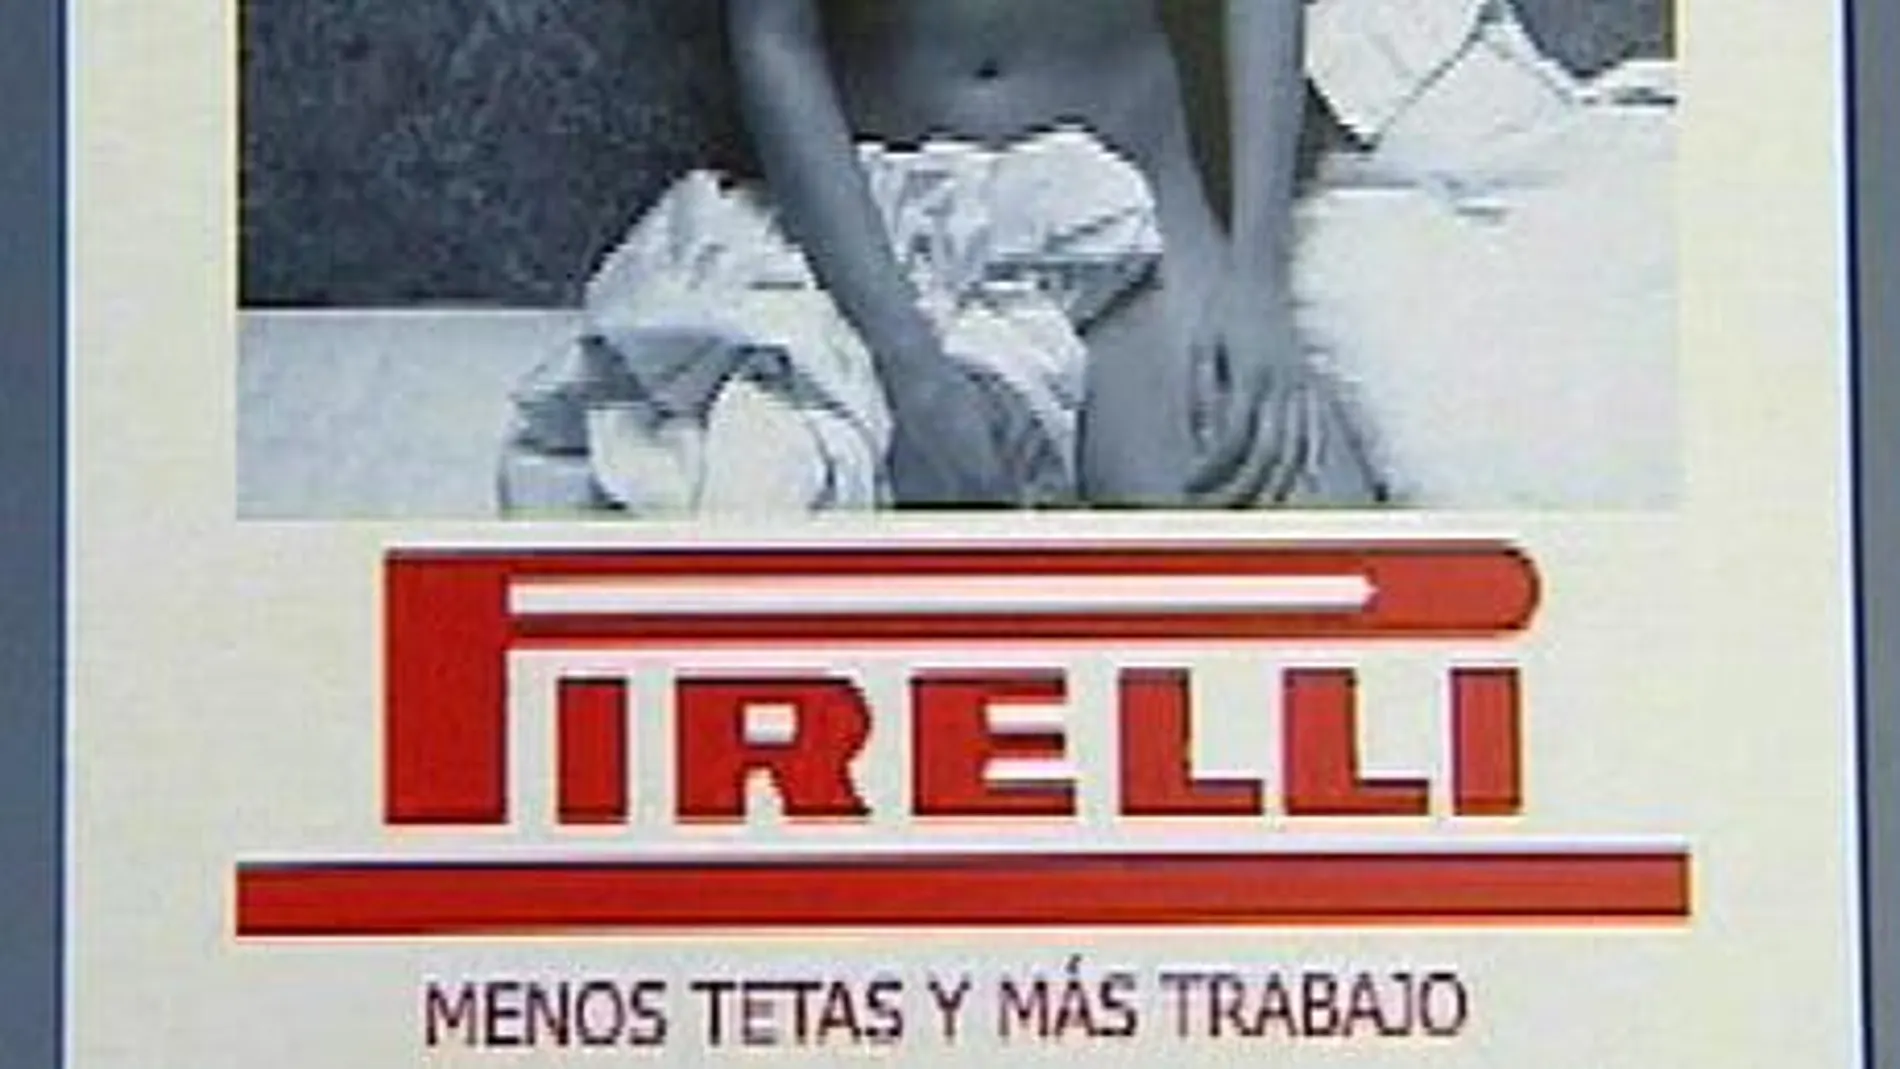 «Menos tetas y más trabajo», el calendario alternativo de los trabajadores de Pirelli